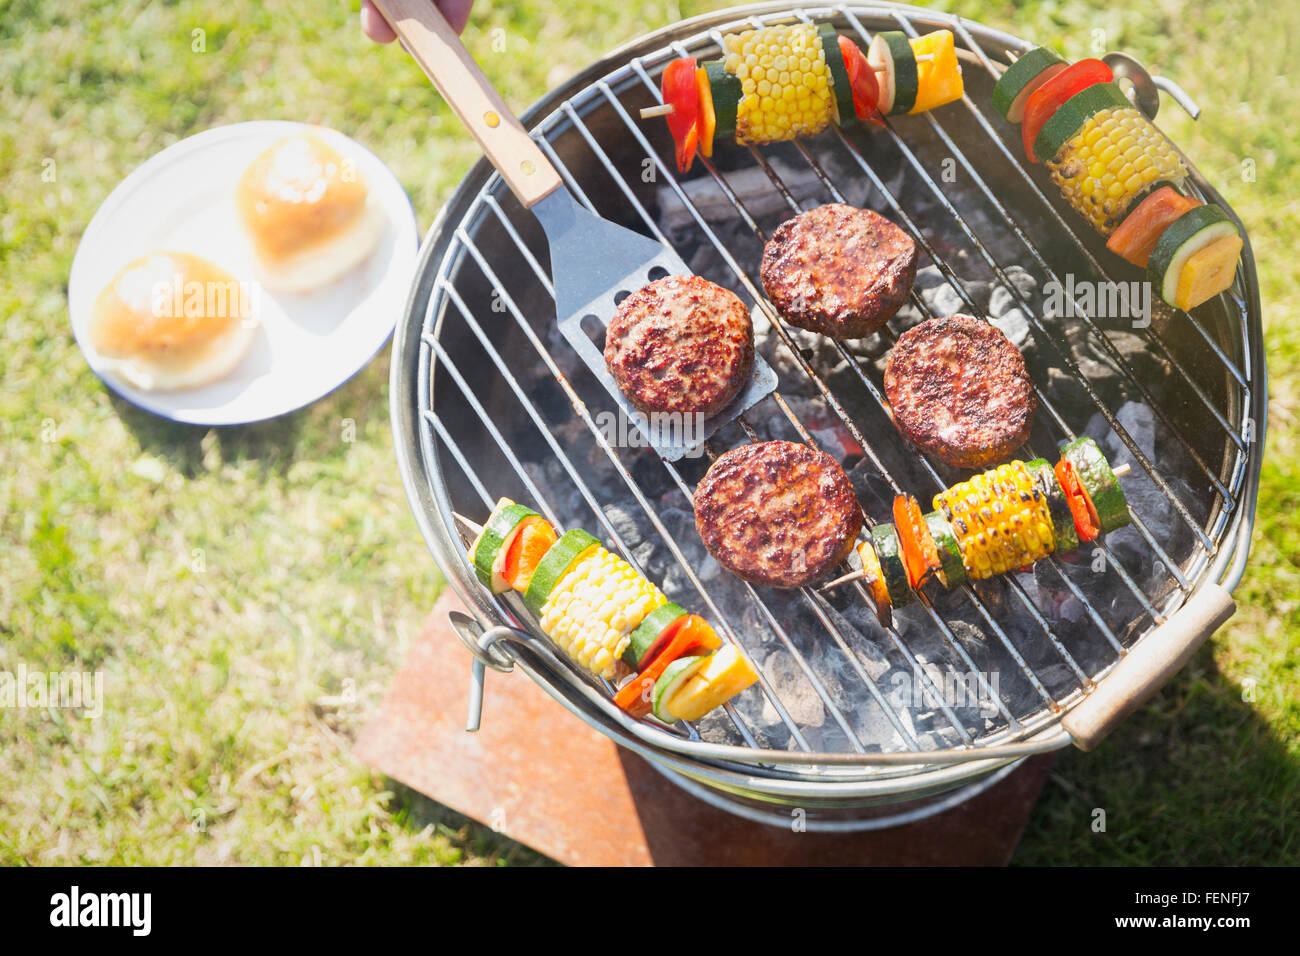 Vue aérienne de hamburgers et de brochettes de légumes sur la grille du barbecue Banque D'Images